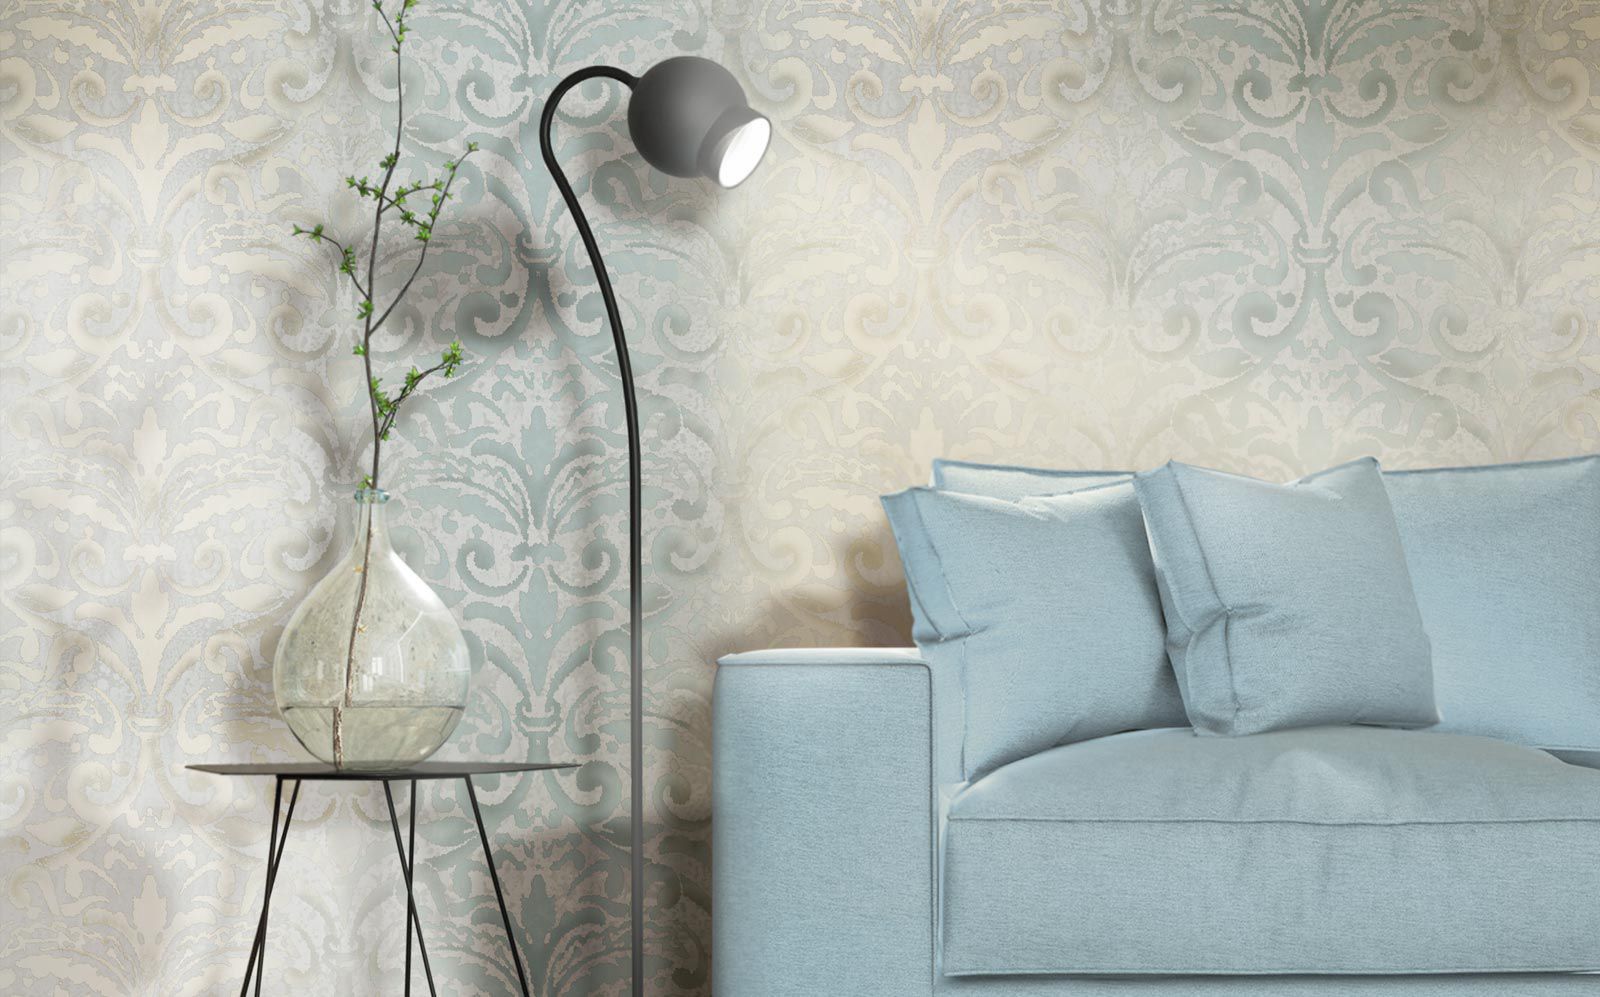 tosca wallpaper,wall,wallpaper,room,furniture,interior design